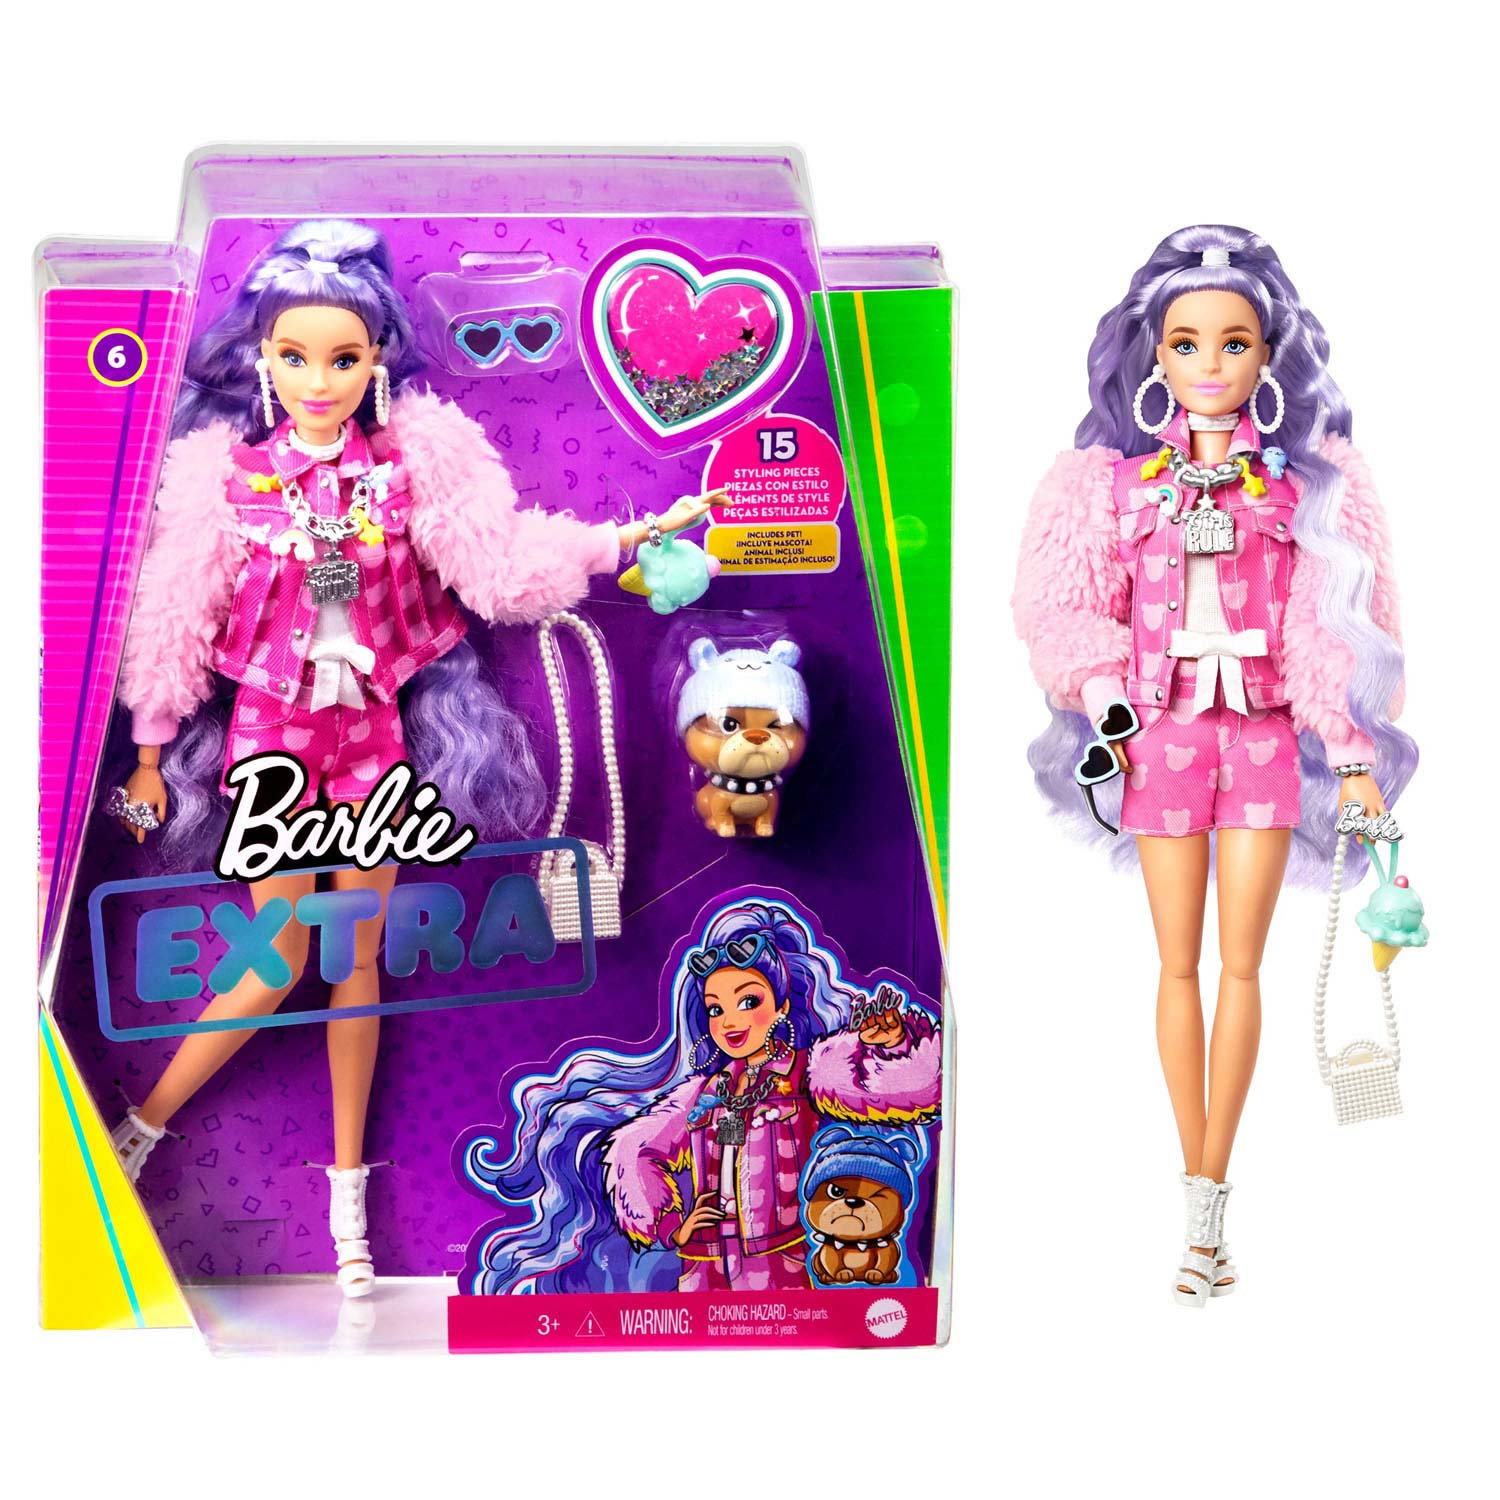 Barbie Millie mit lila Haaren